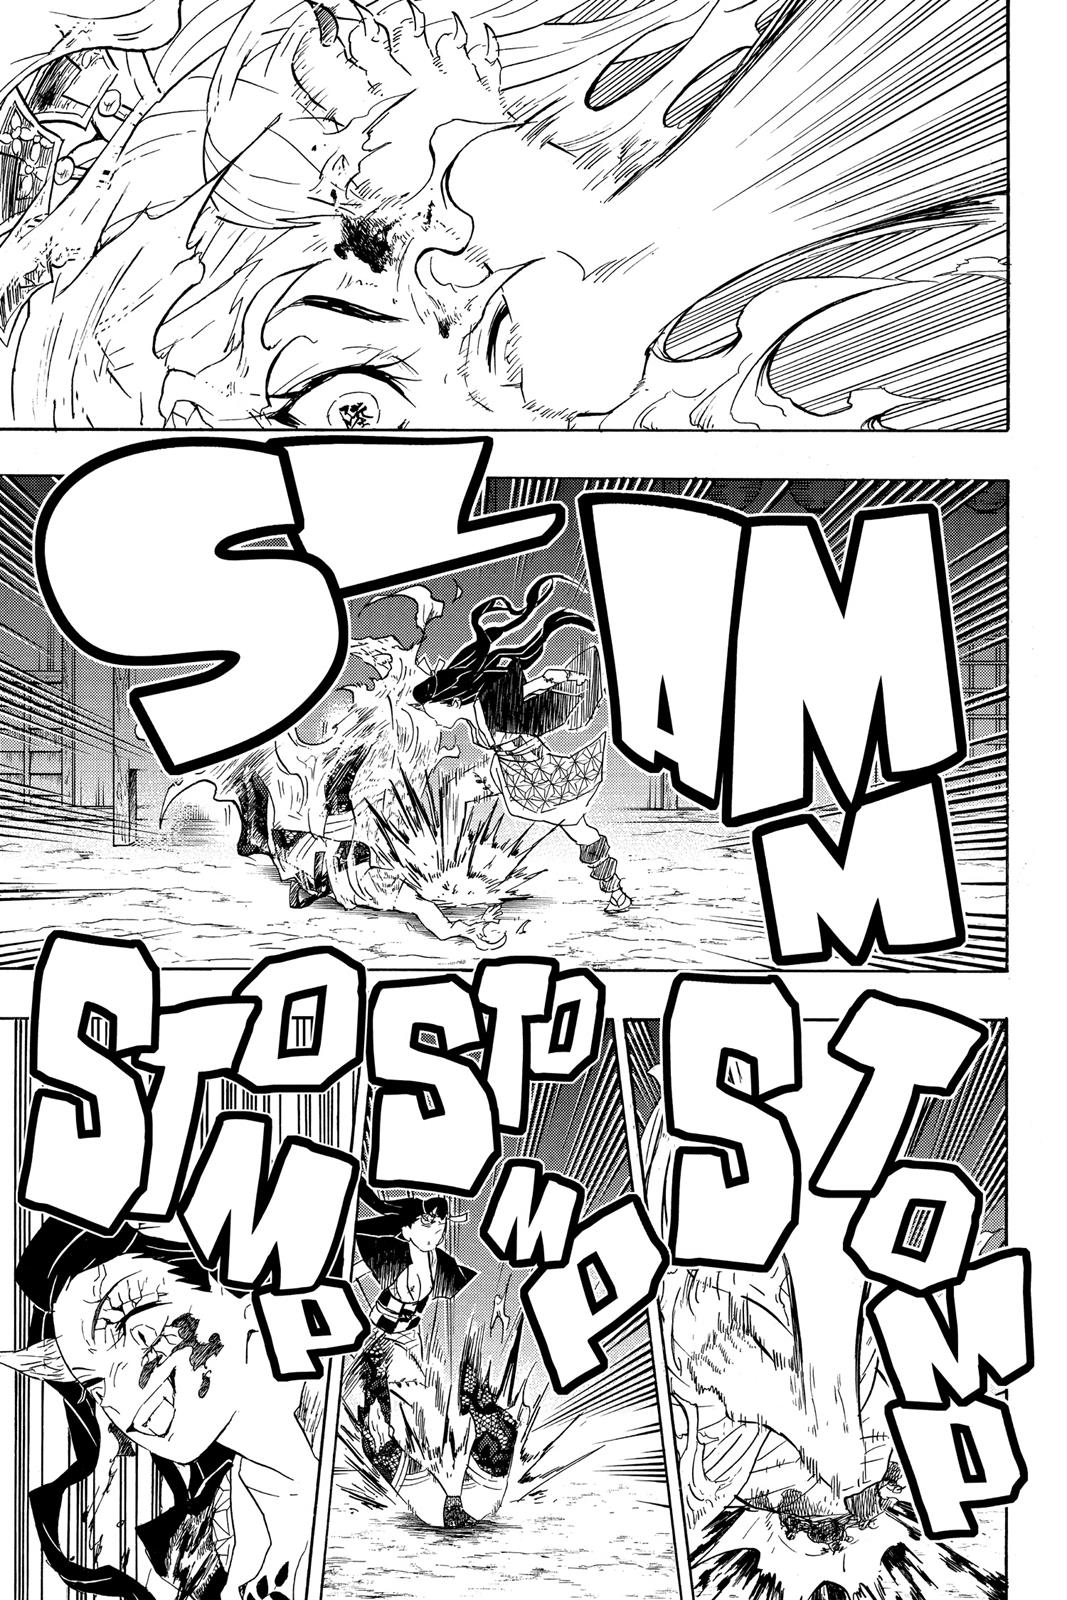 Demon Slayer Manga Manga Chapter - 84 - image 7